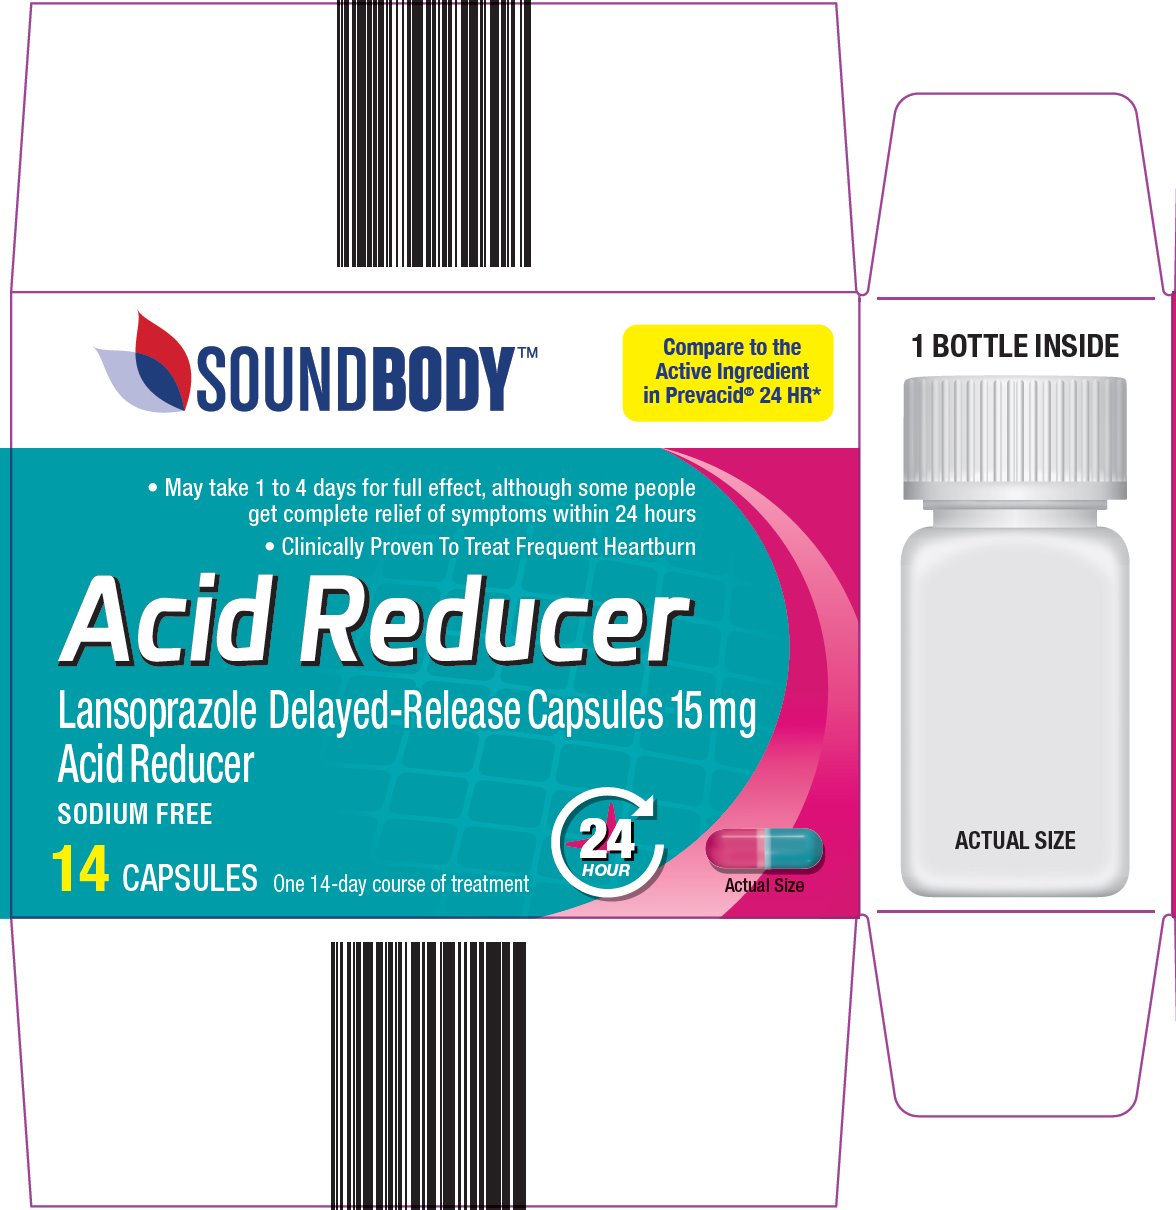 soundbody acid reducer